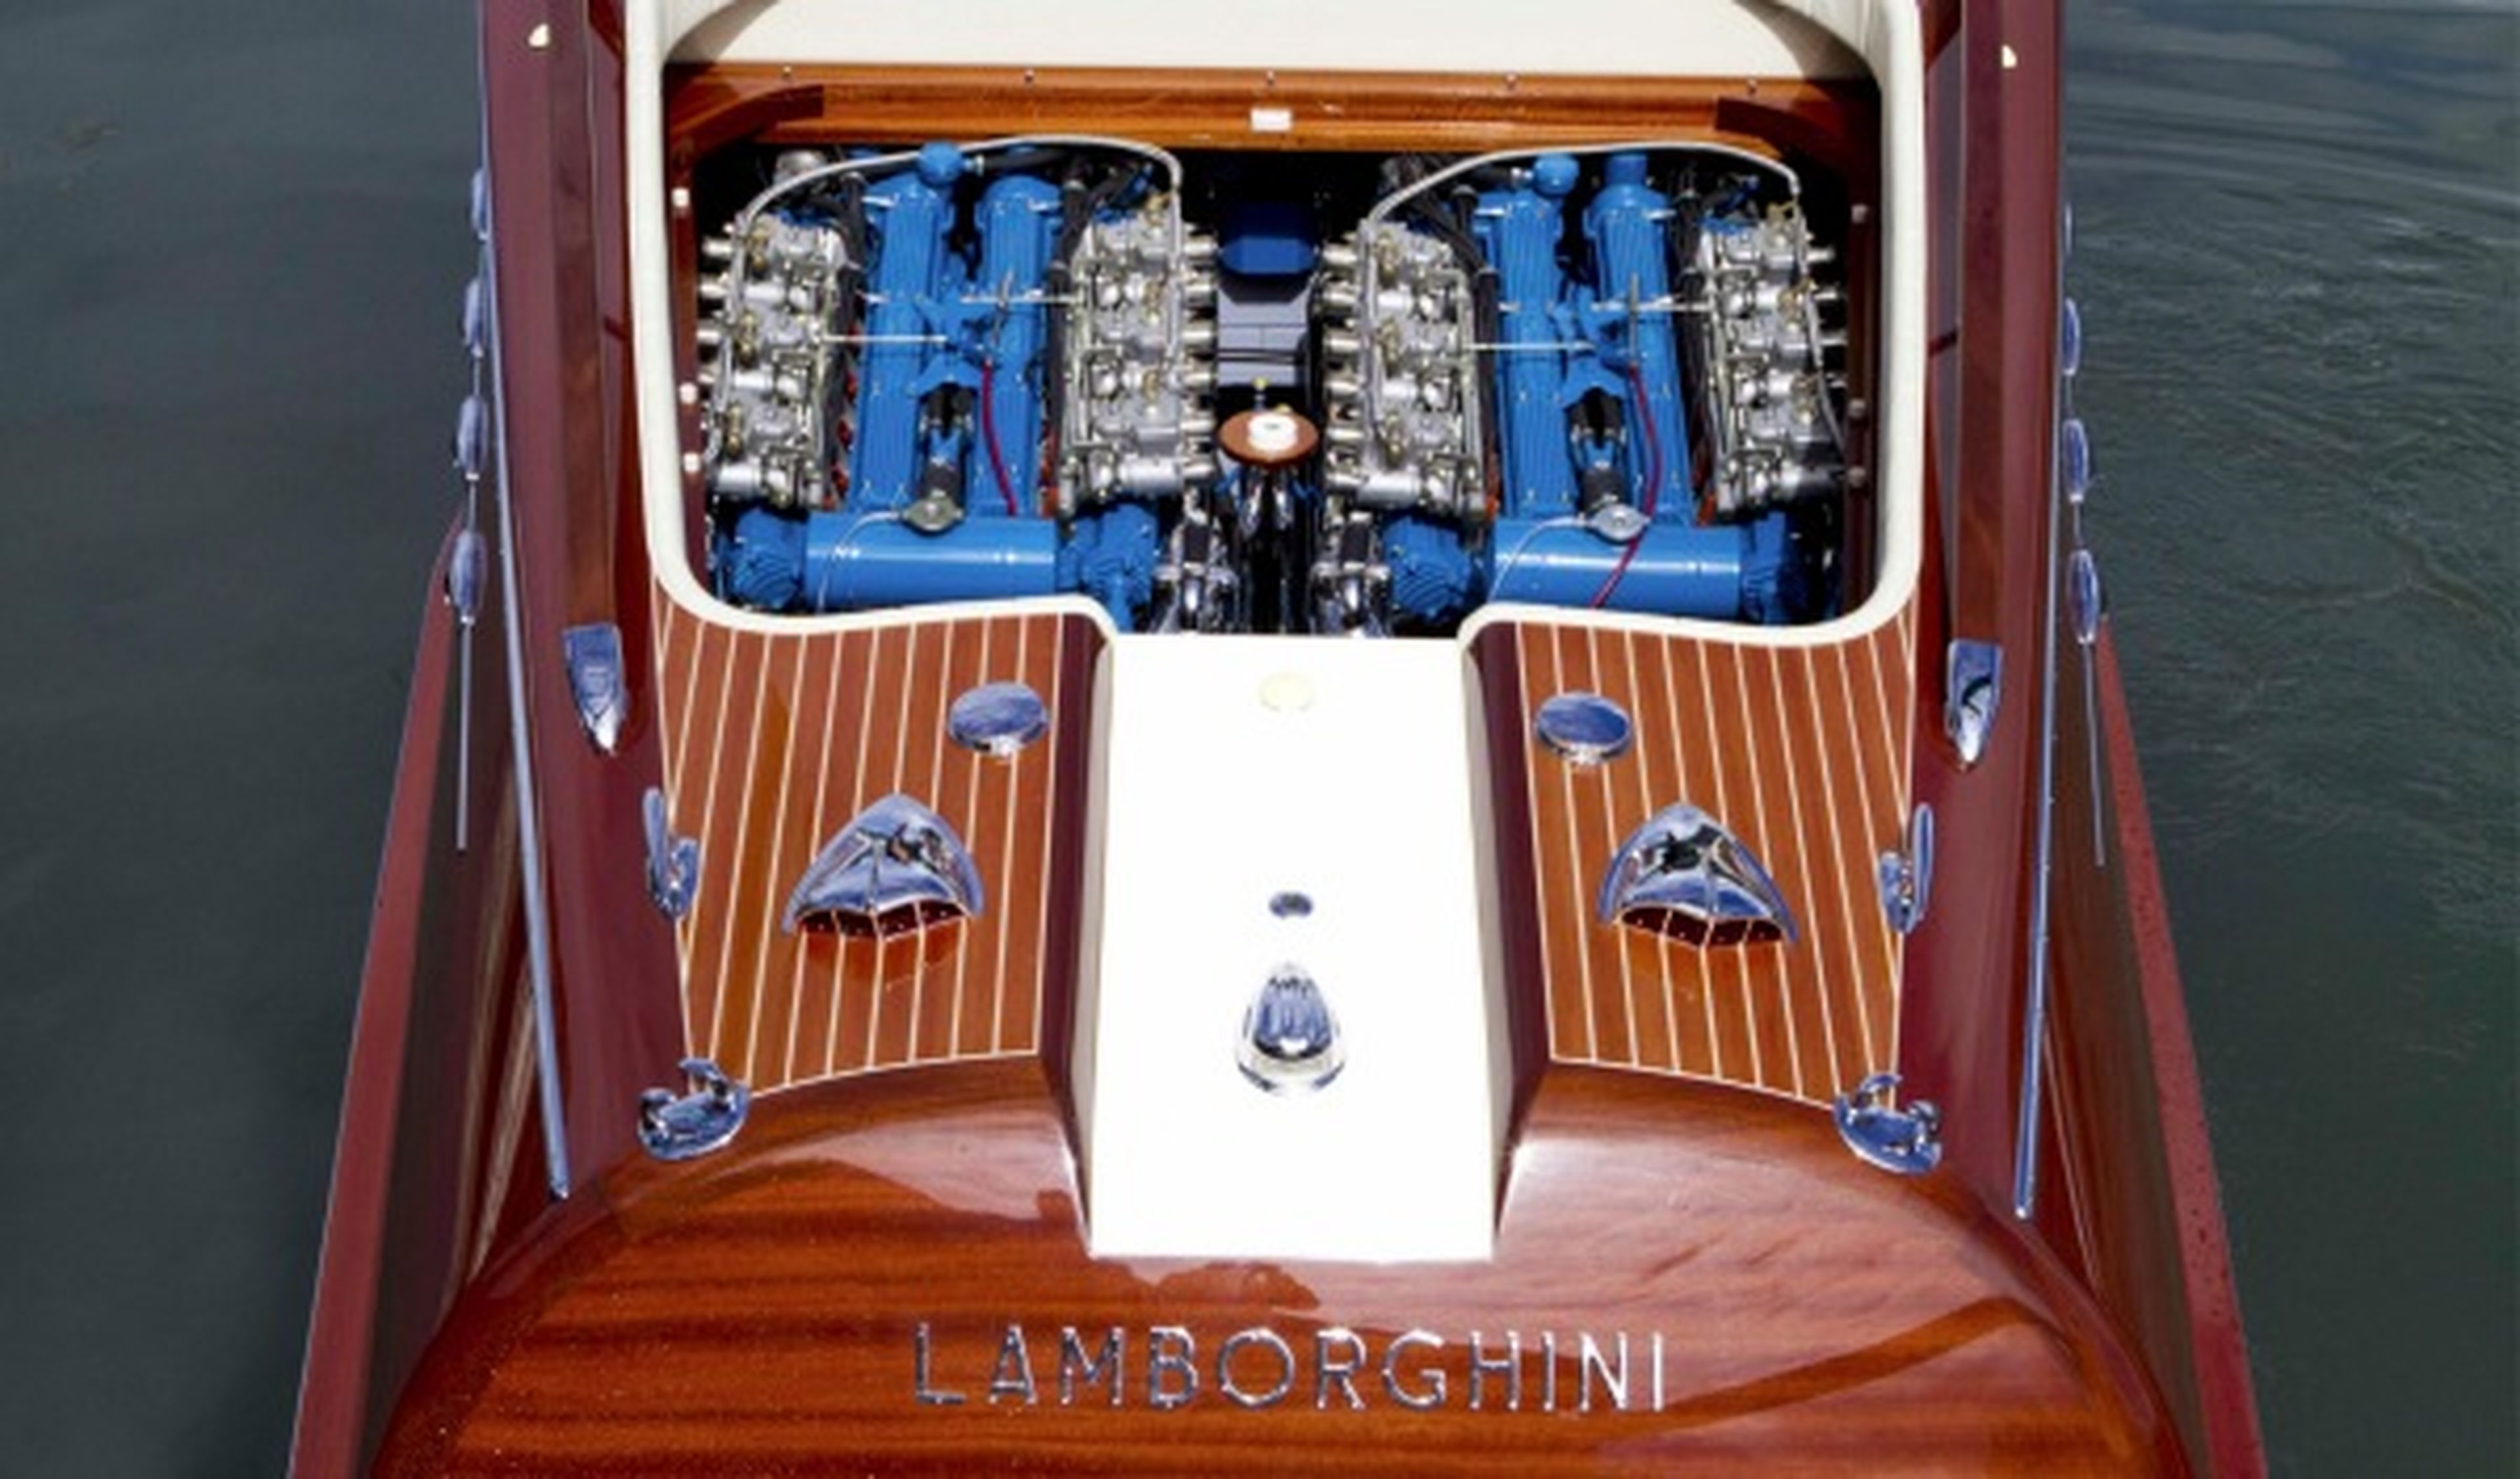 Motor Riva Aquarama Lamborghini